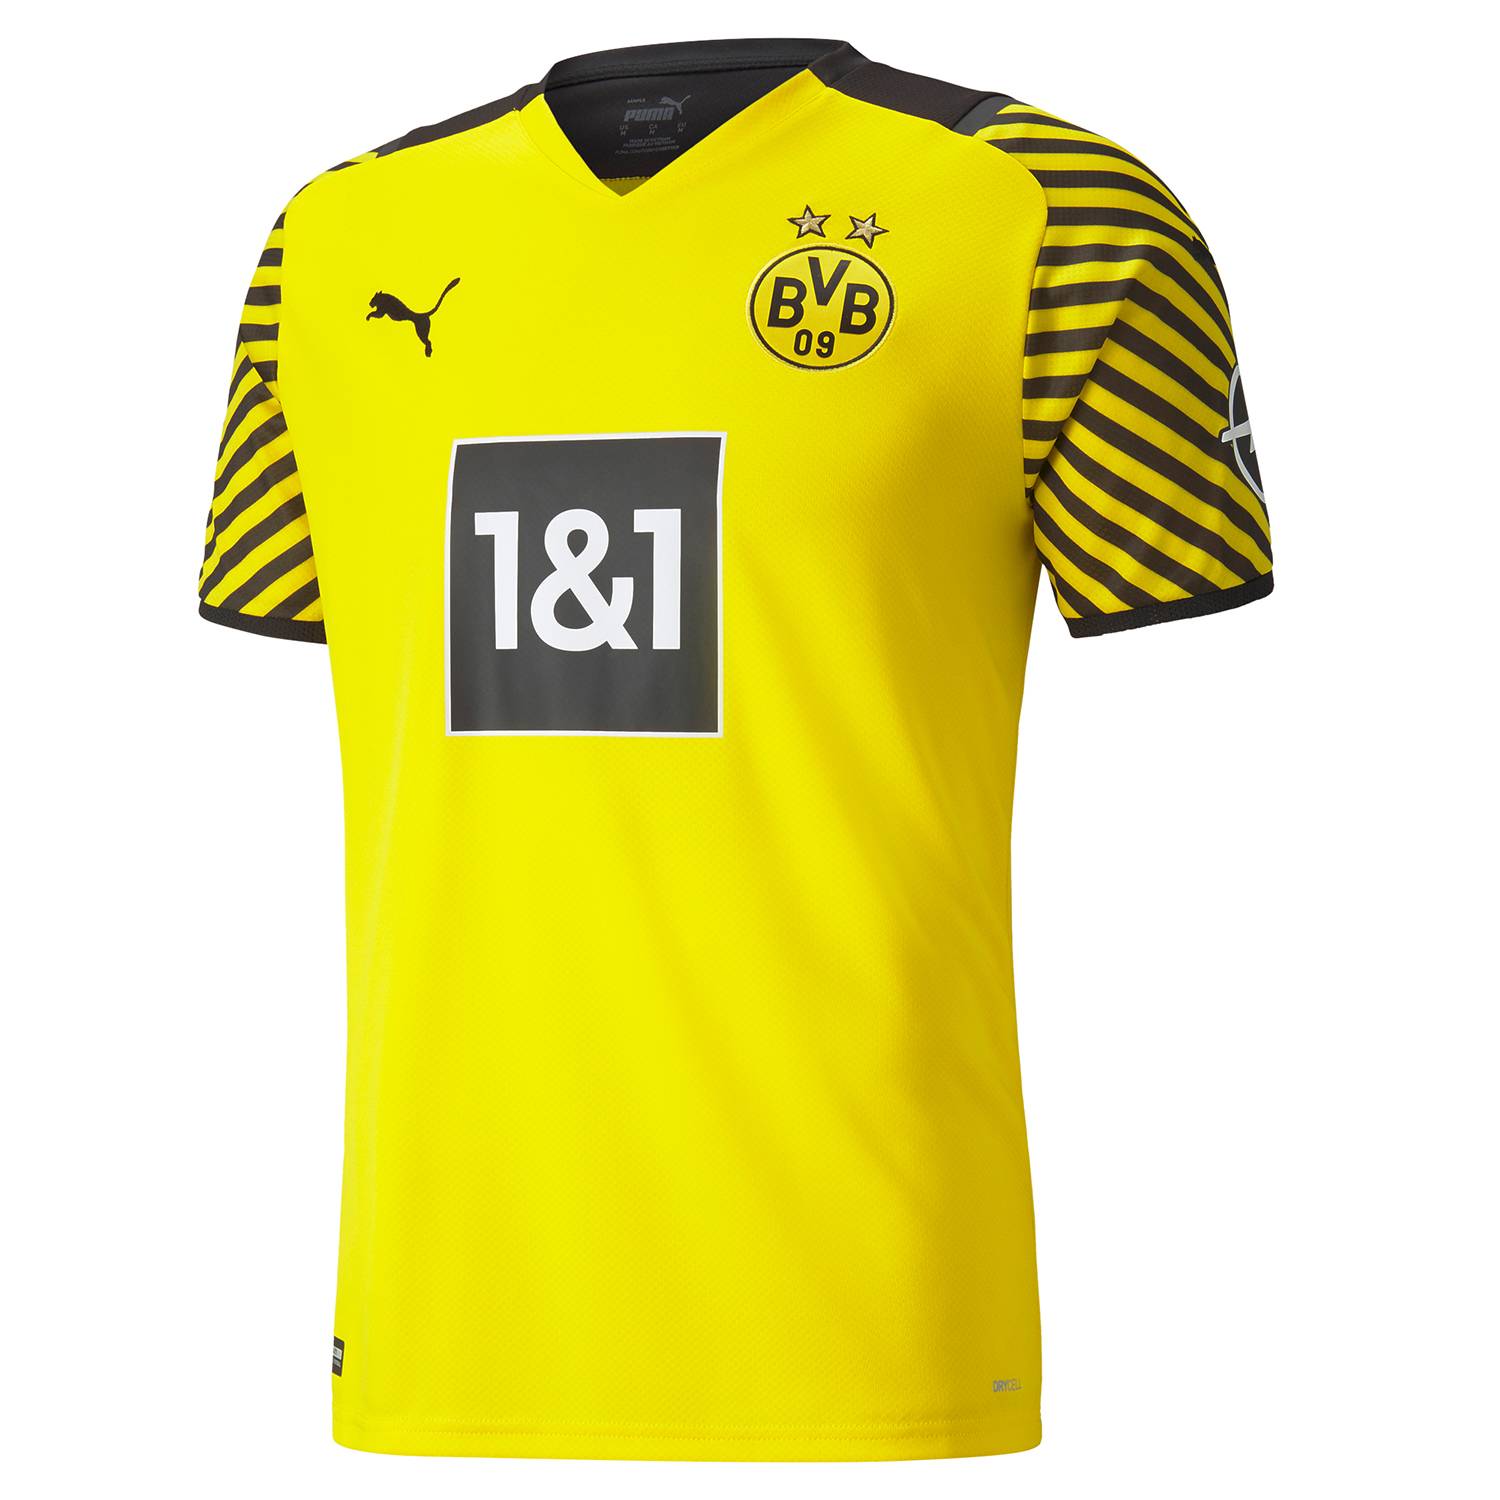 Unisex Borussia Dortmund Taza con diseño de bufanda Negro/Amarillo